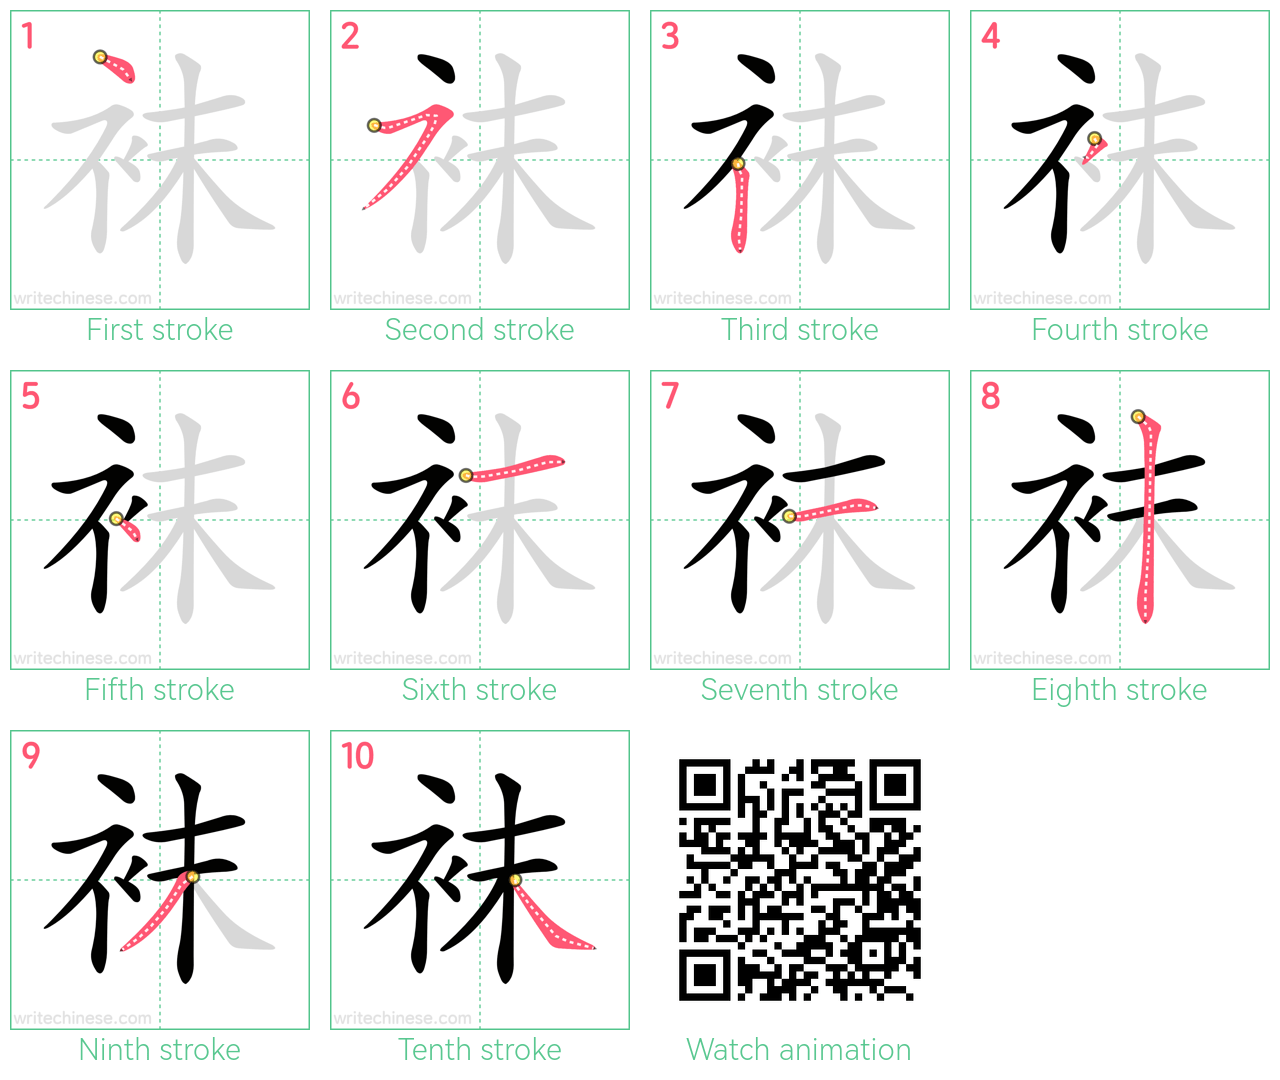 袜 step-by-step stroke order diagrams